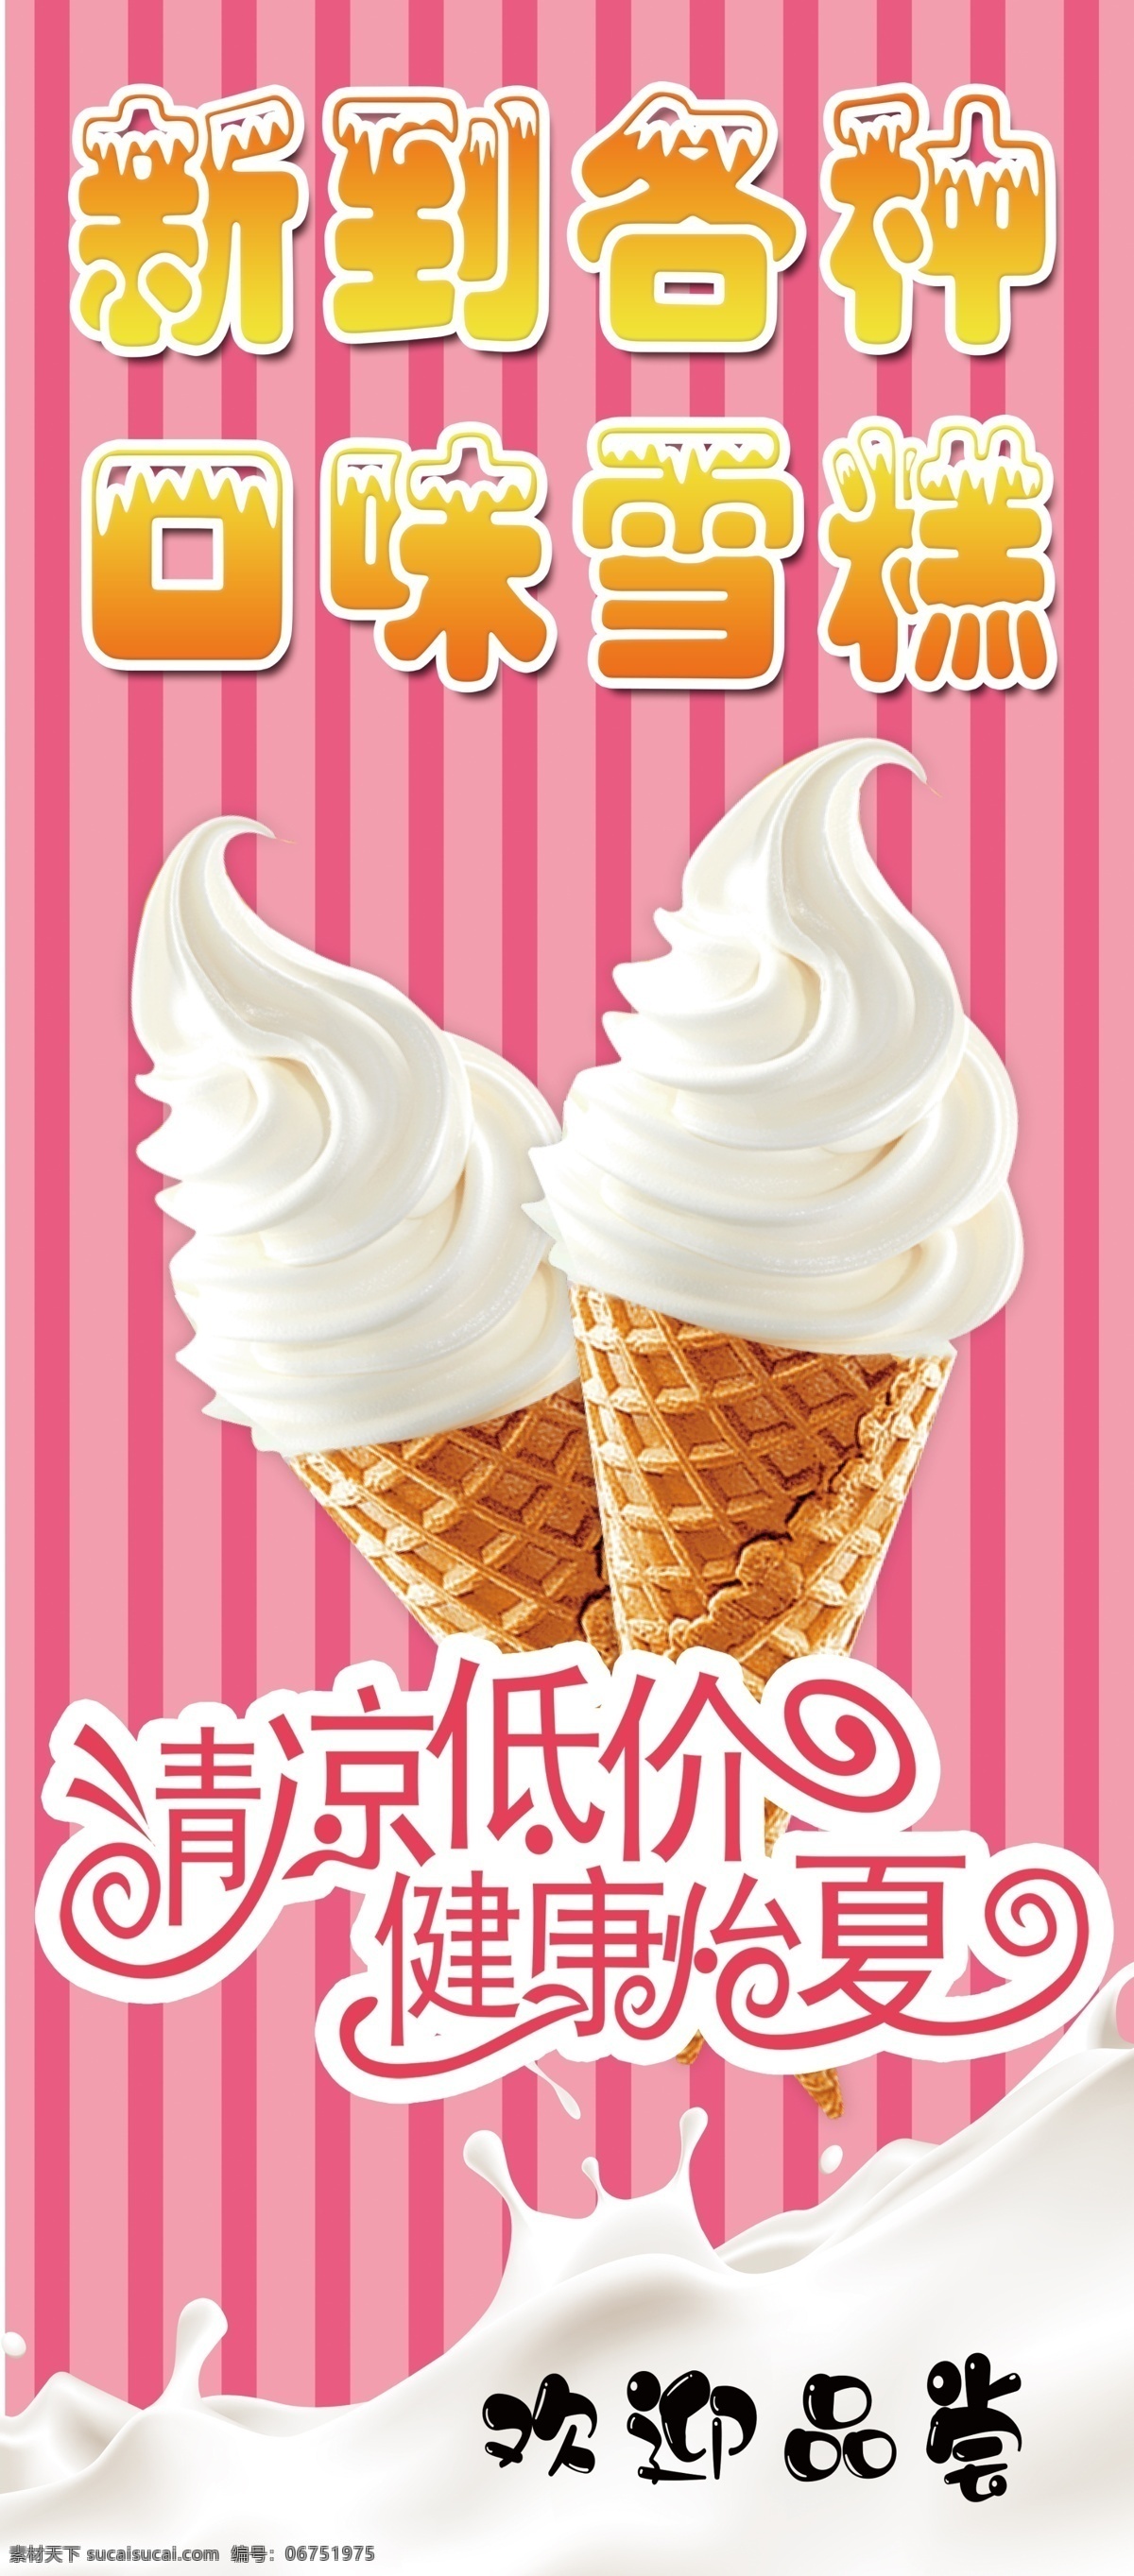 冰淇淋展架 冰淇淋 易拉宝 欢迎品尝 清凉低价 雪糕批发 各种口味